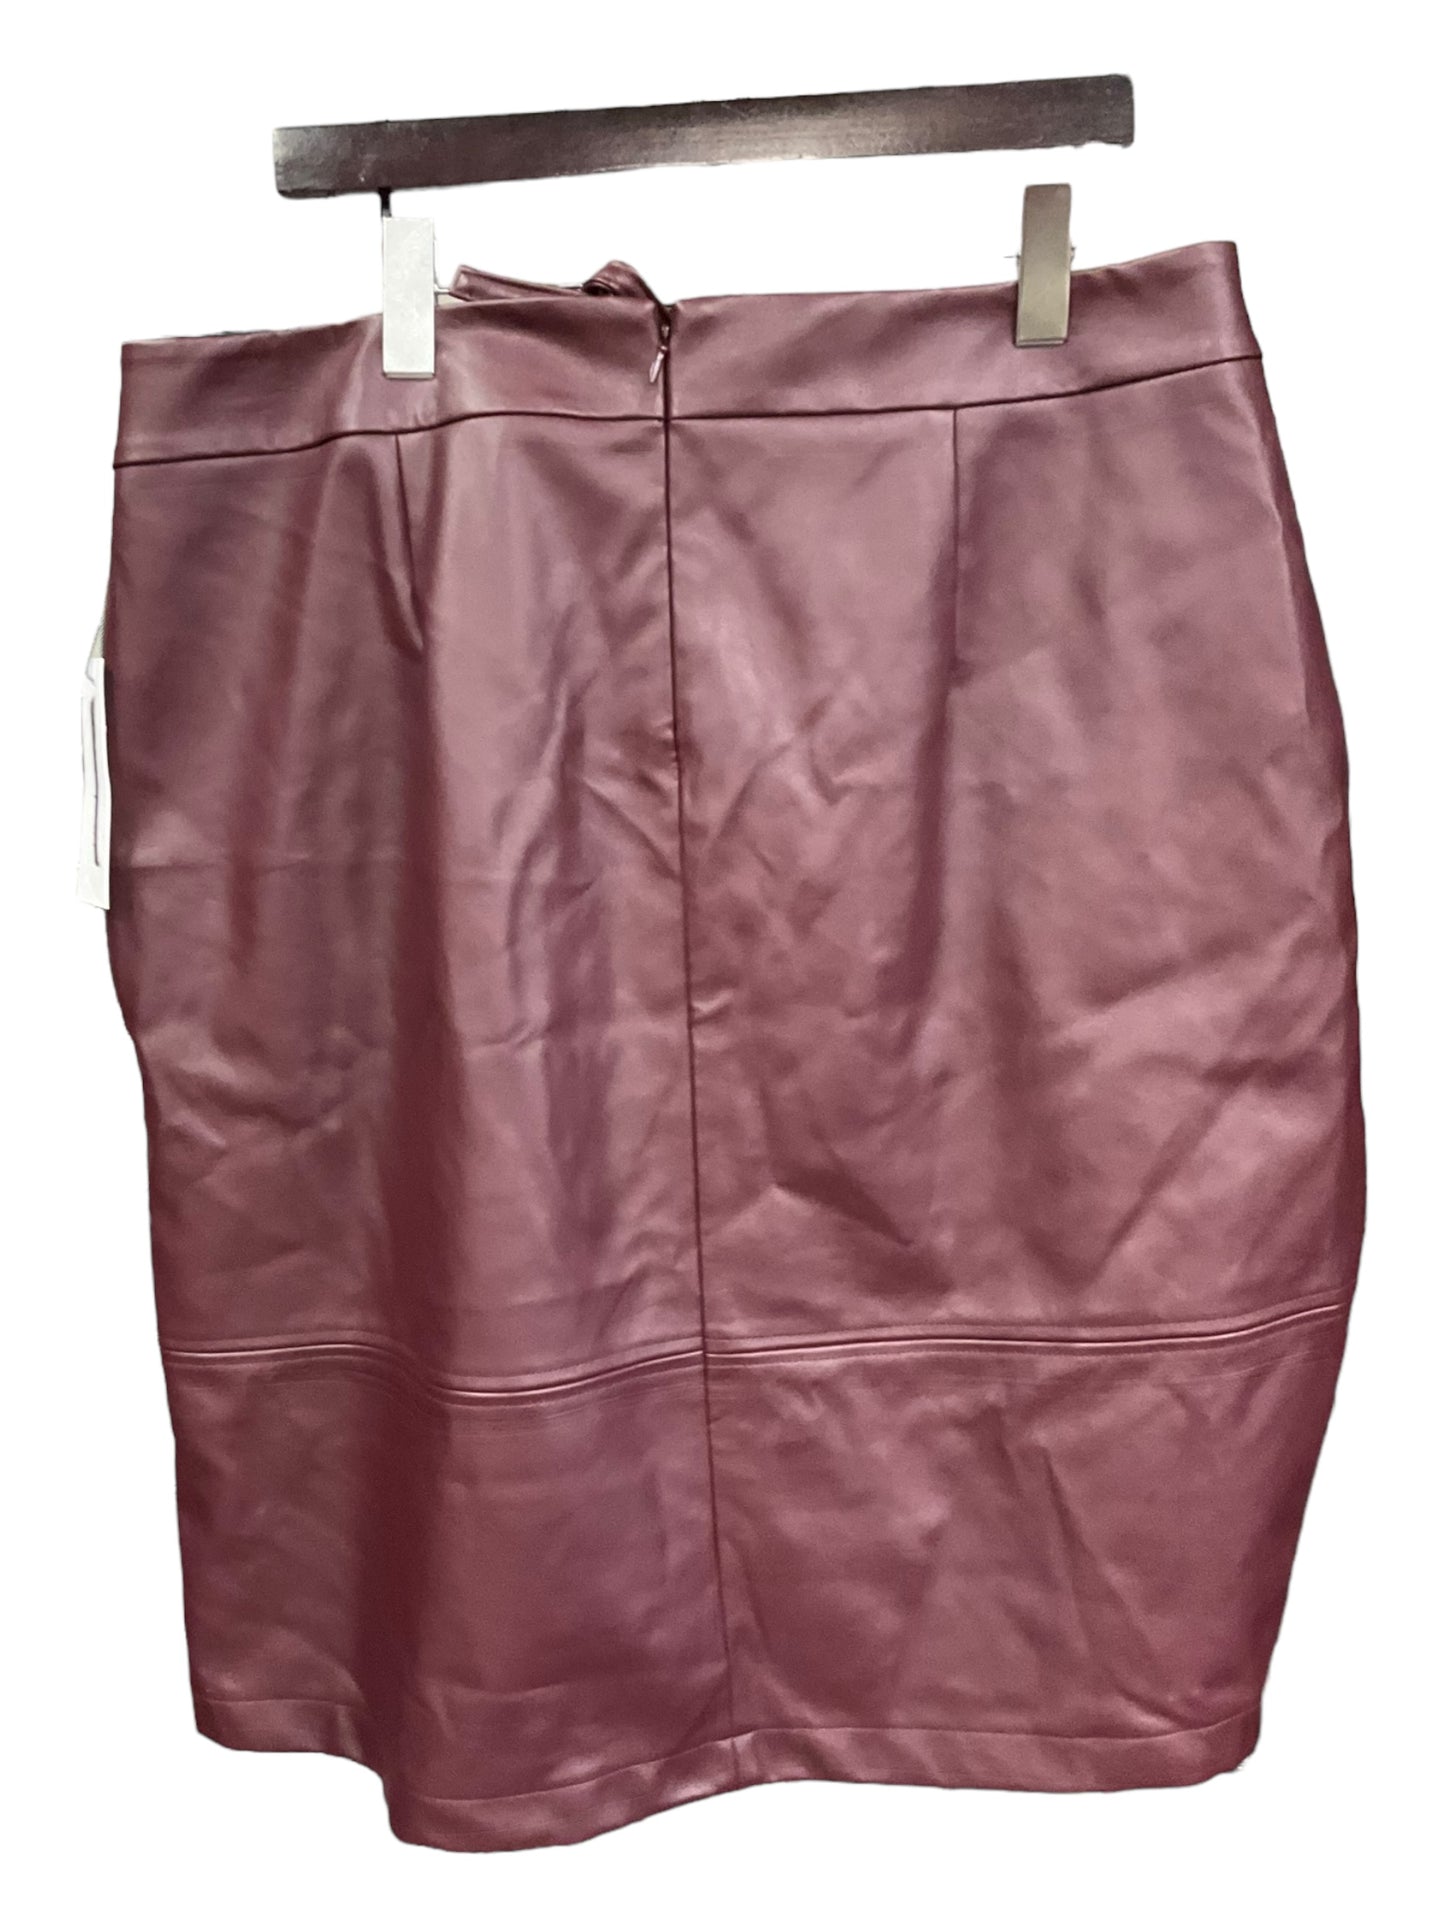 Skirt Midi By Liz Claiborne  Size: 1x